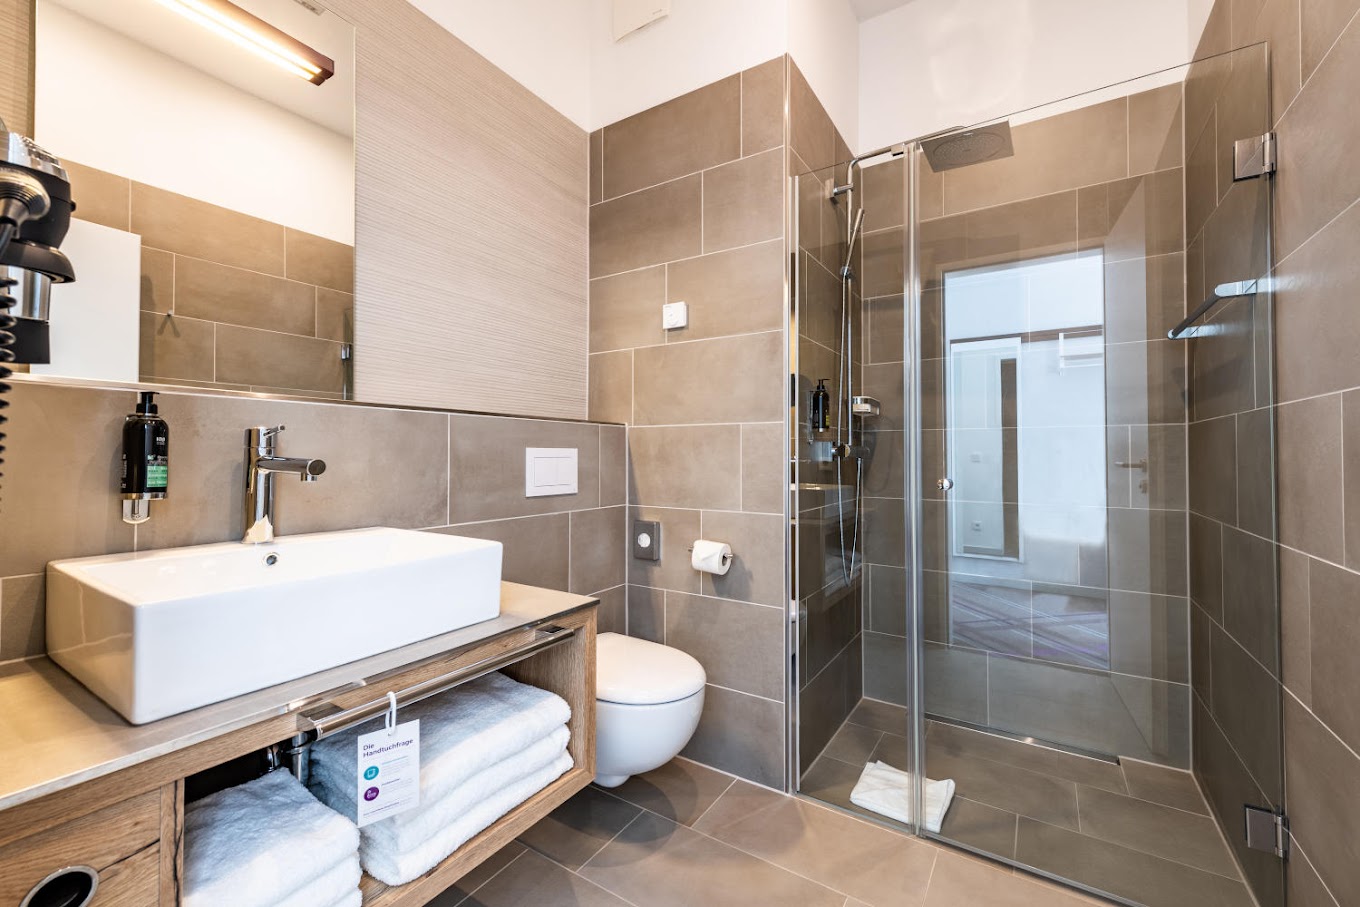 Her odada duş, ücretsiz banyo malzemeleri ve saç kurutma makinesi içeren özel banyo bulunmaktadır. 